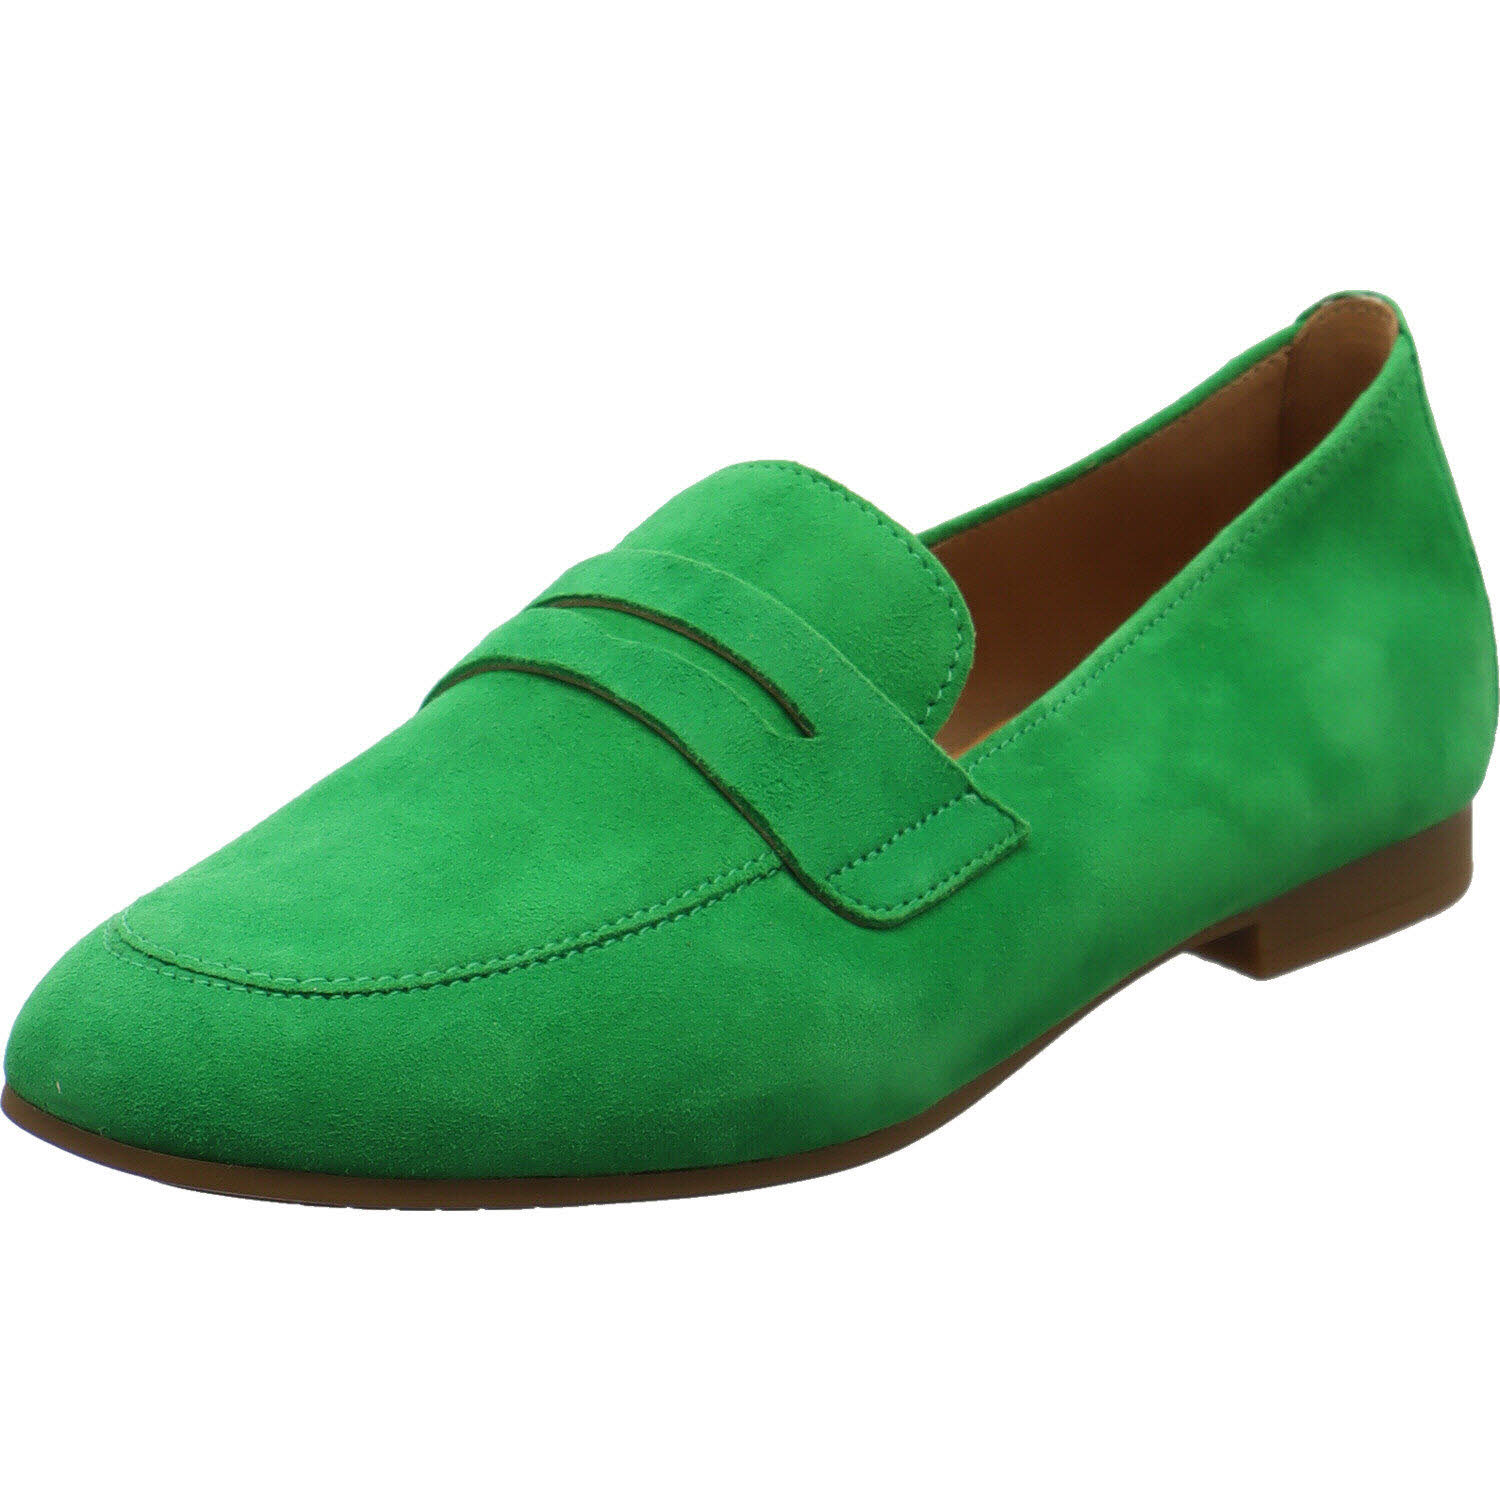 Damen Slipper von Gabor auch in Grün erhältlich